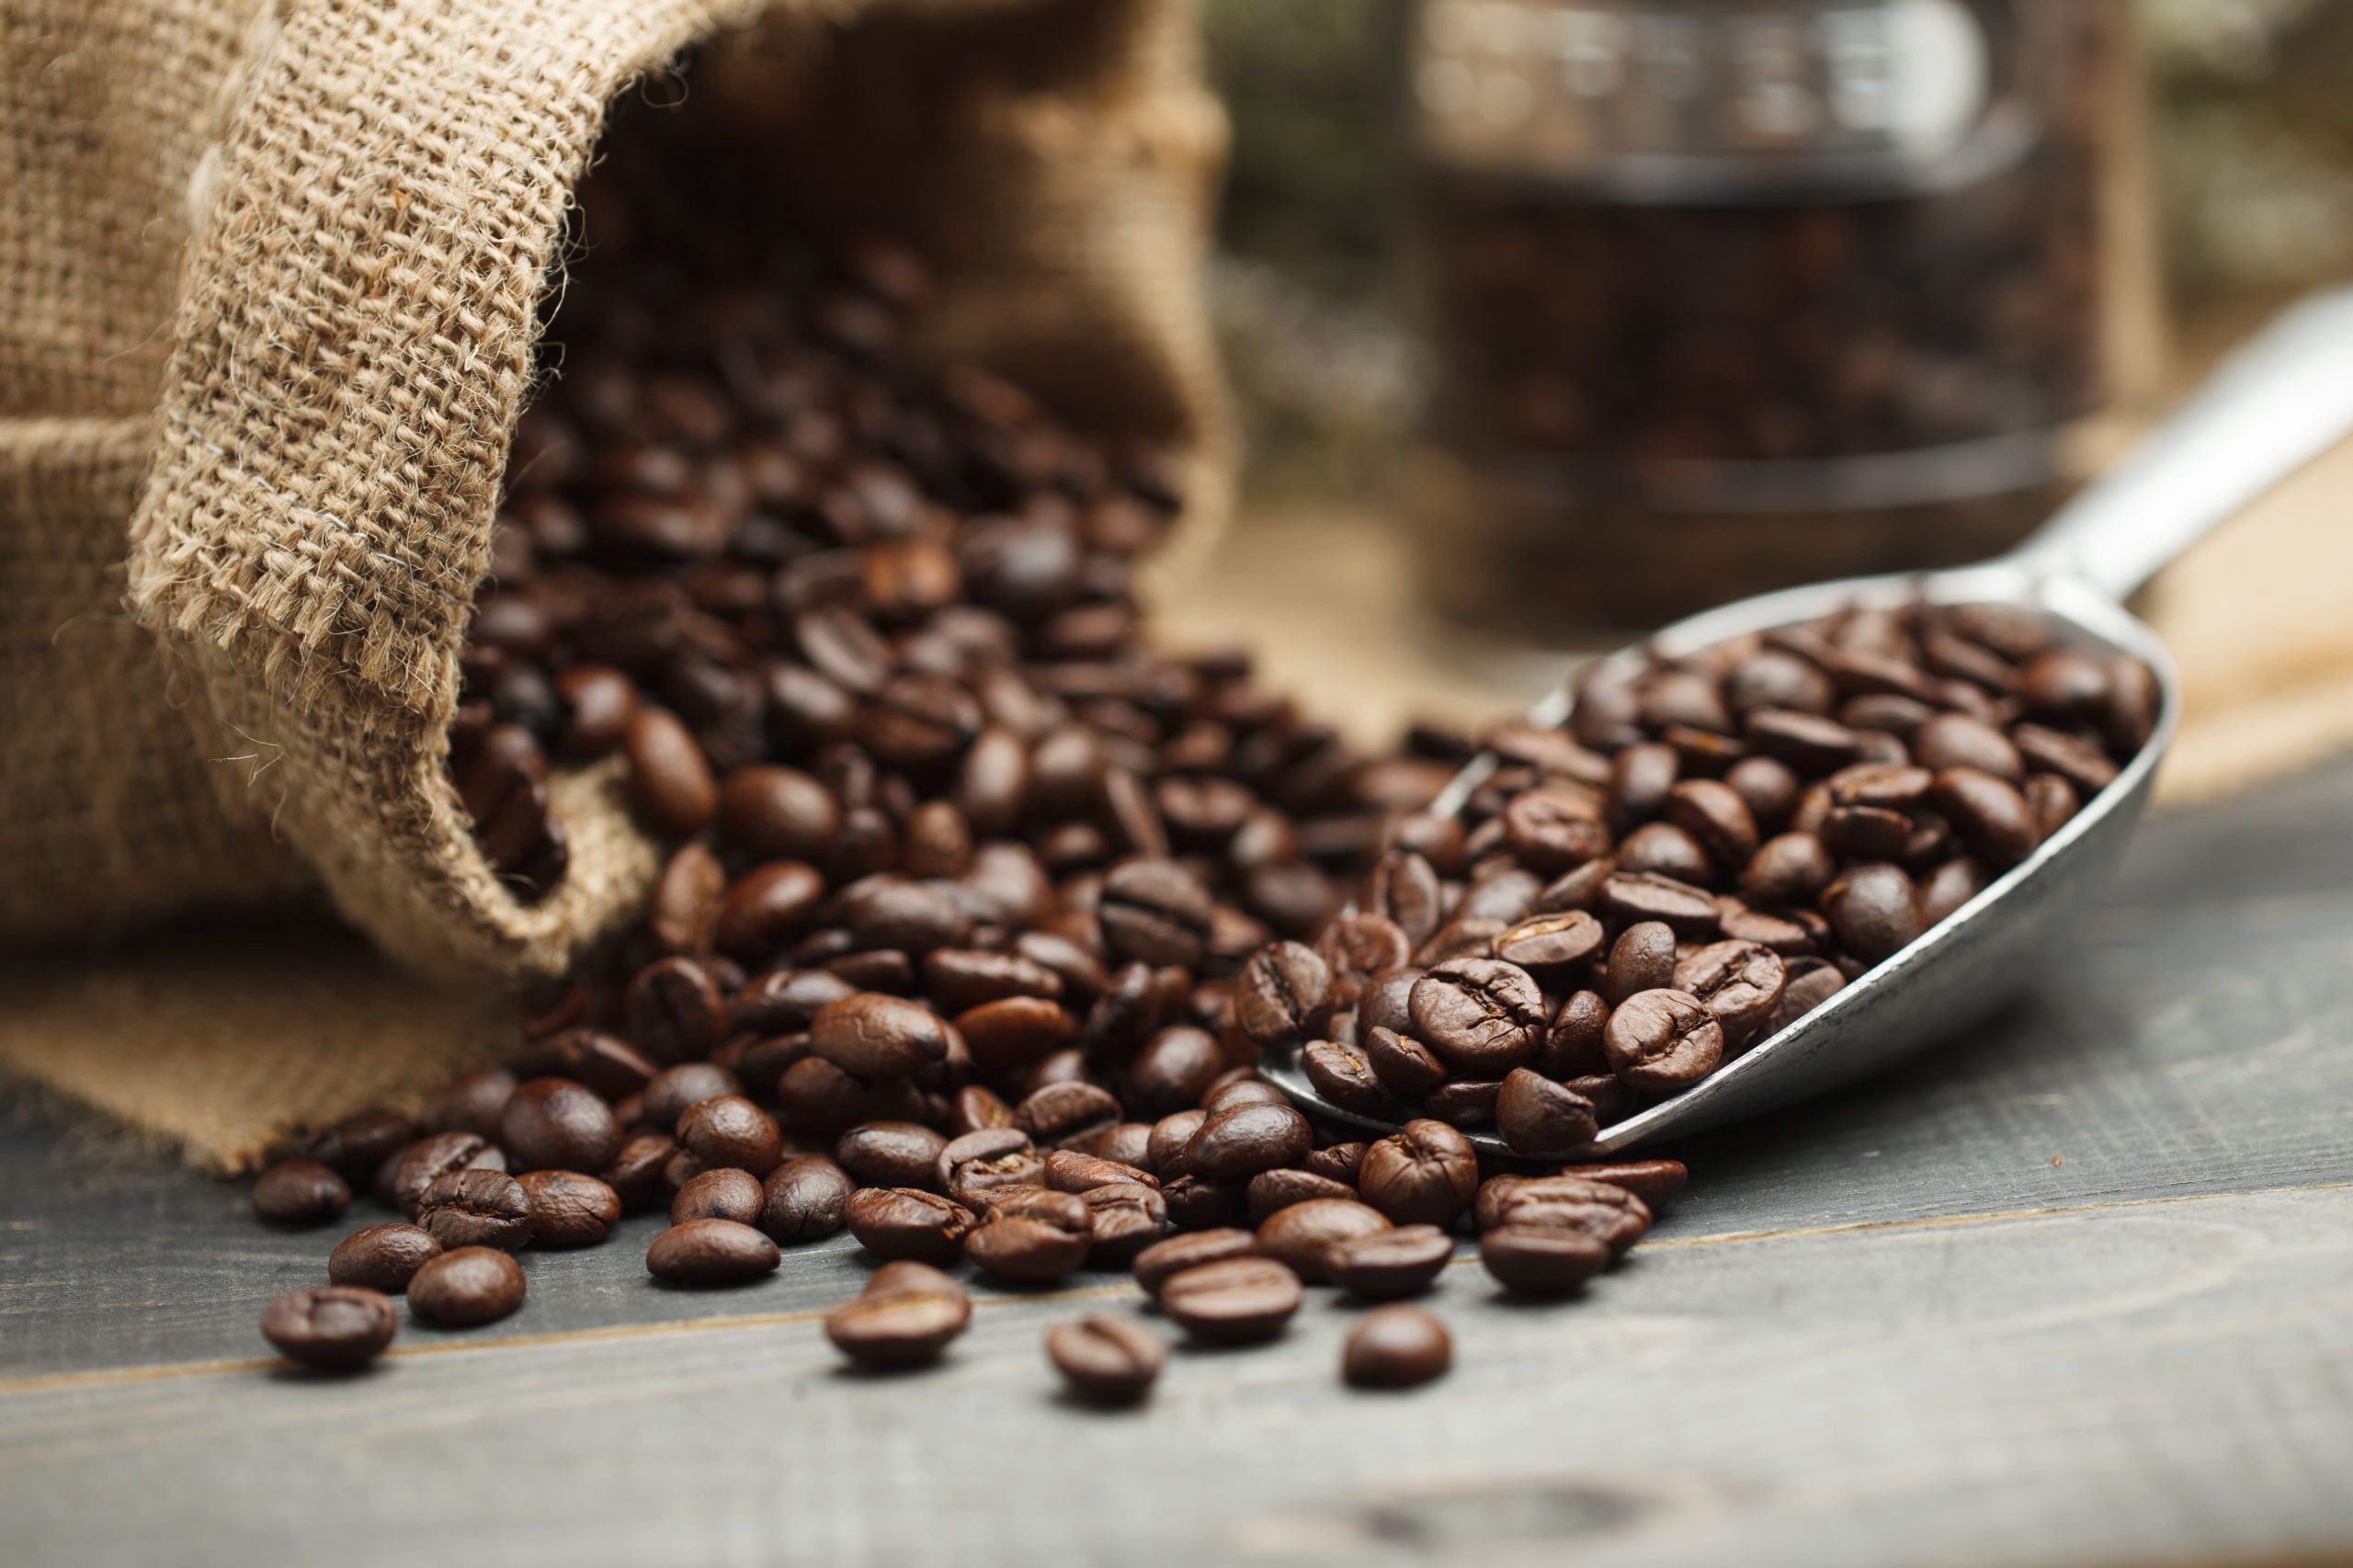 Las etiquetas del café deben cumplir una serie de normativas